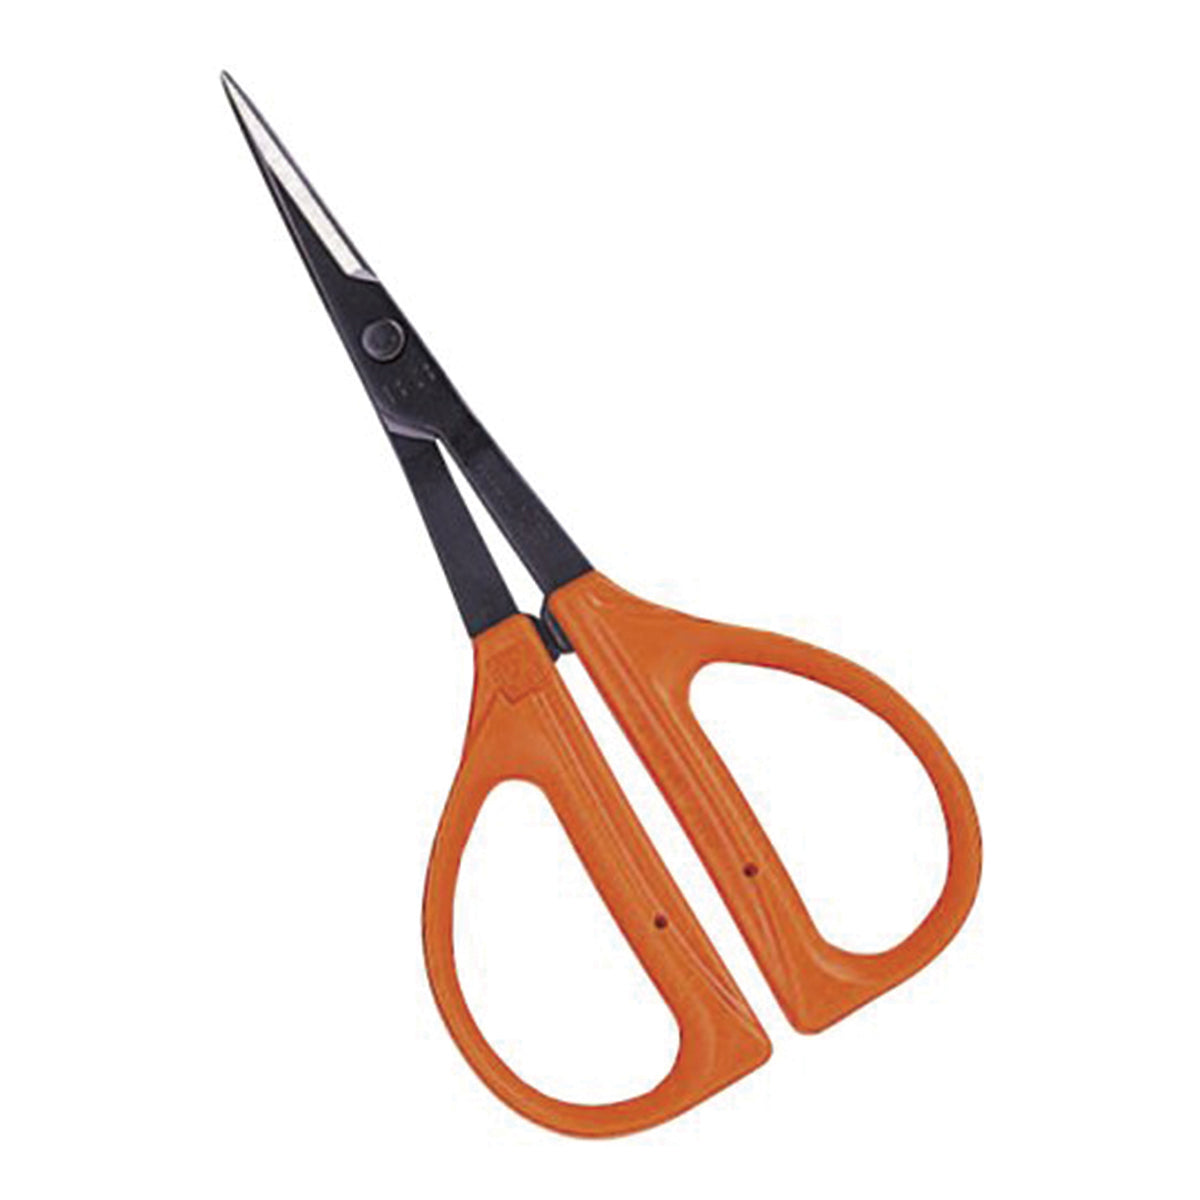 Chikamasa Shears / Pruners / Scissors (Curved + Straight)